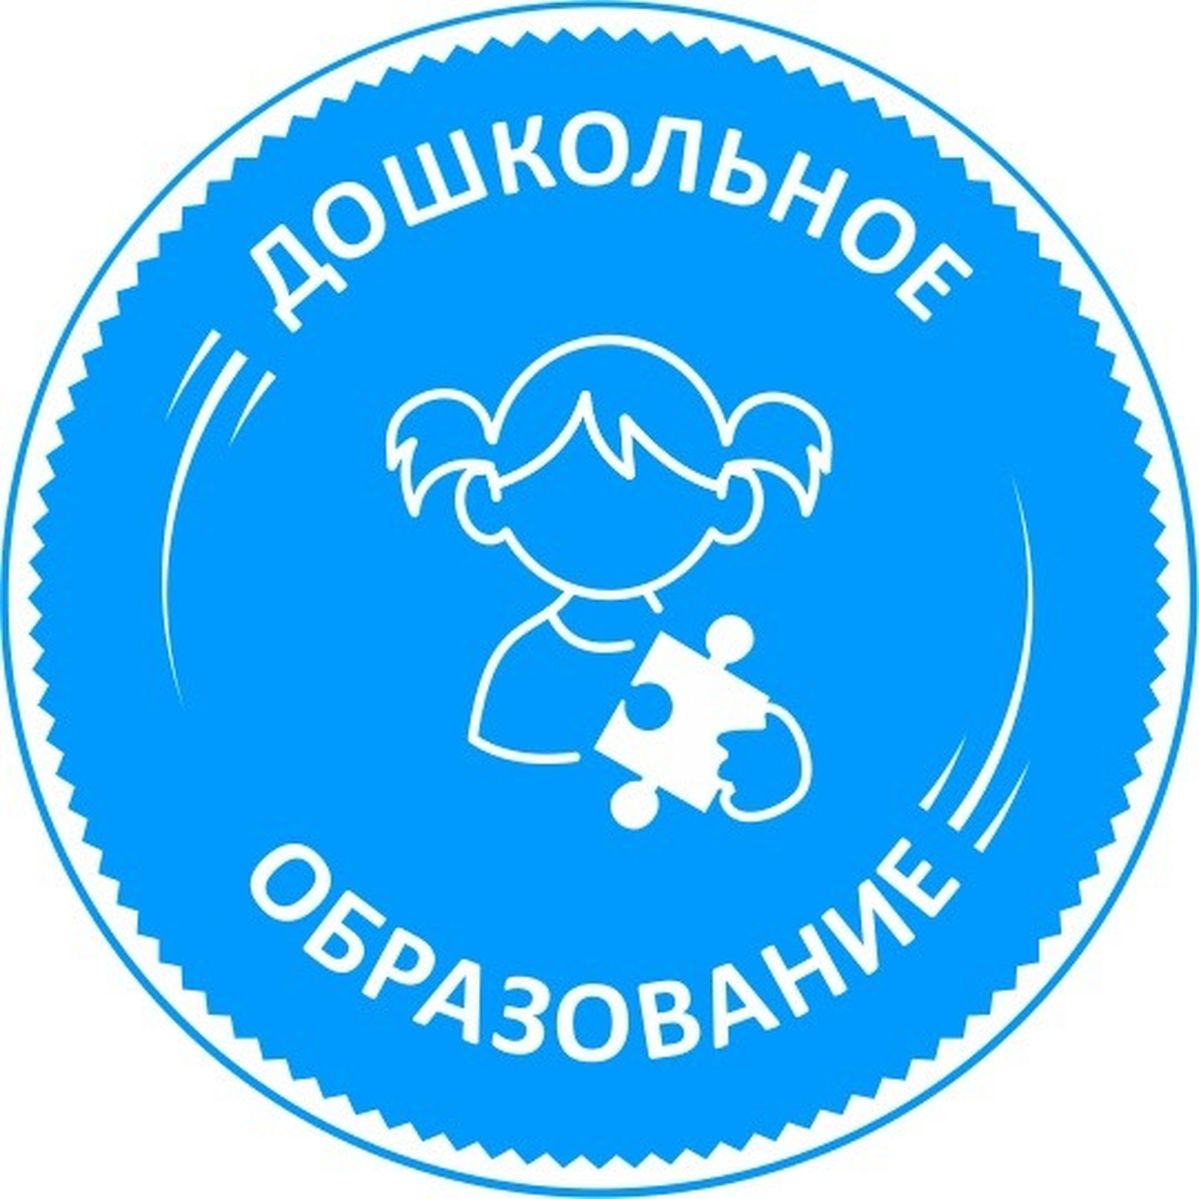 Фоп аоп. Значок дошкольного образования. Дошкольное образование логотип. Логотип детского сада. Логотип дошкольное воспитание.